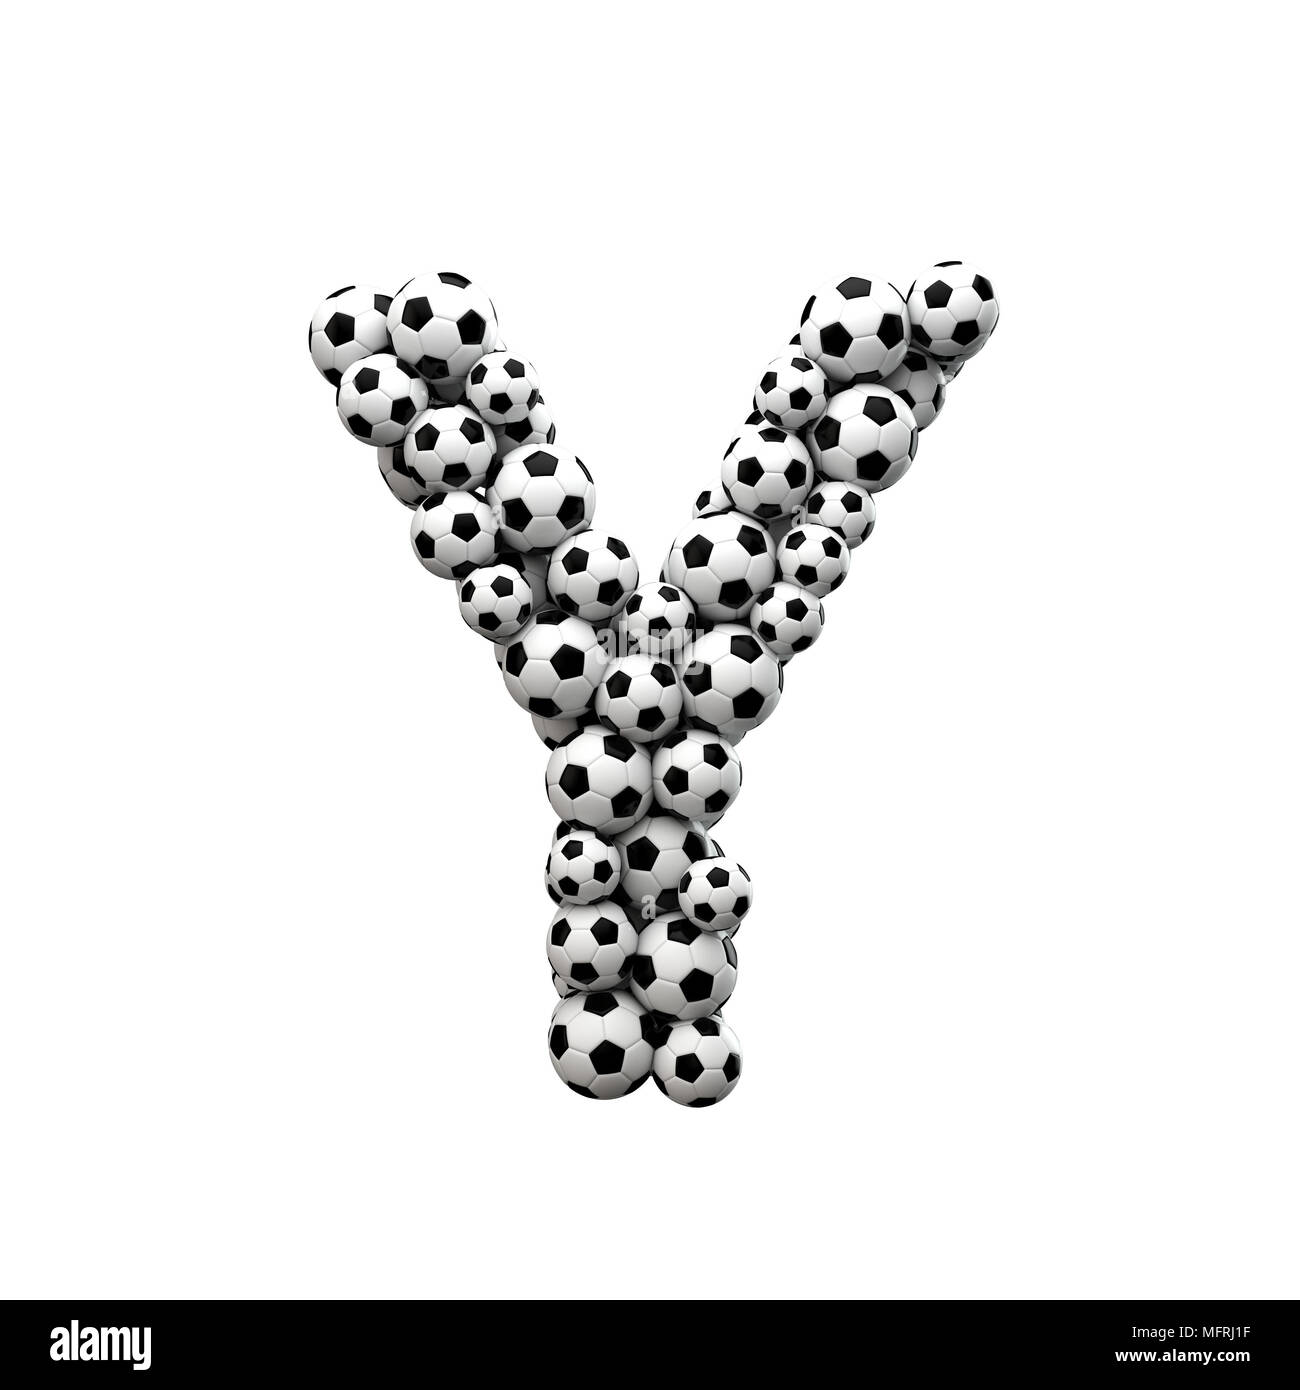 Letra mayúscula Y font hechas a partir de una colección de balones de fútbol. 3D Rendering Foto de stock